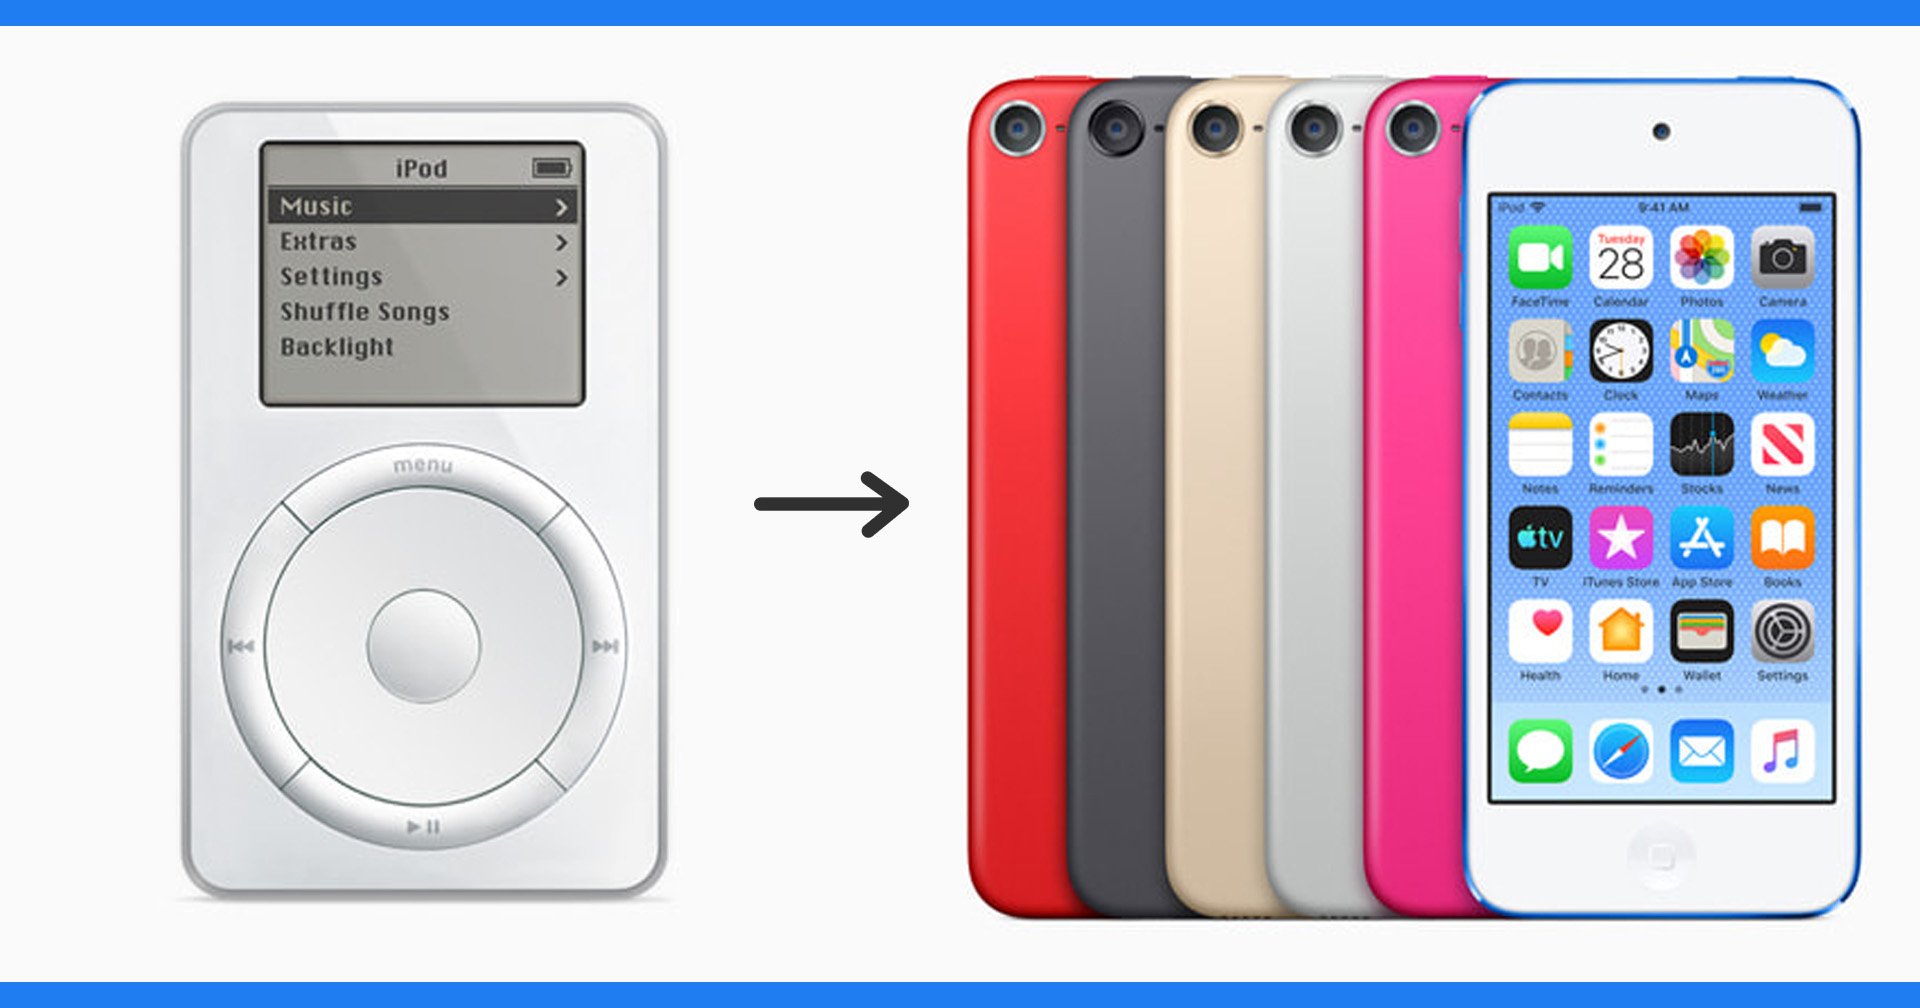 ย้อนดูหน้าตา iPod เครื่องเล่นเพลงพกพาที่ได้รับความนิยมในอดีต